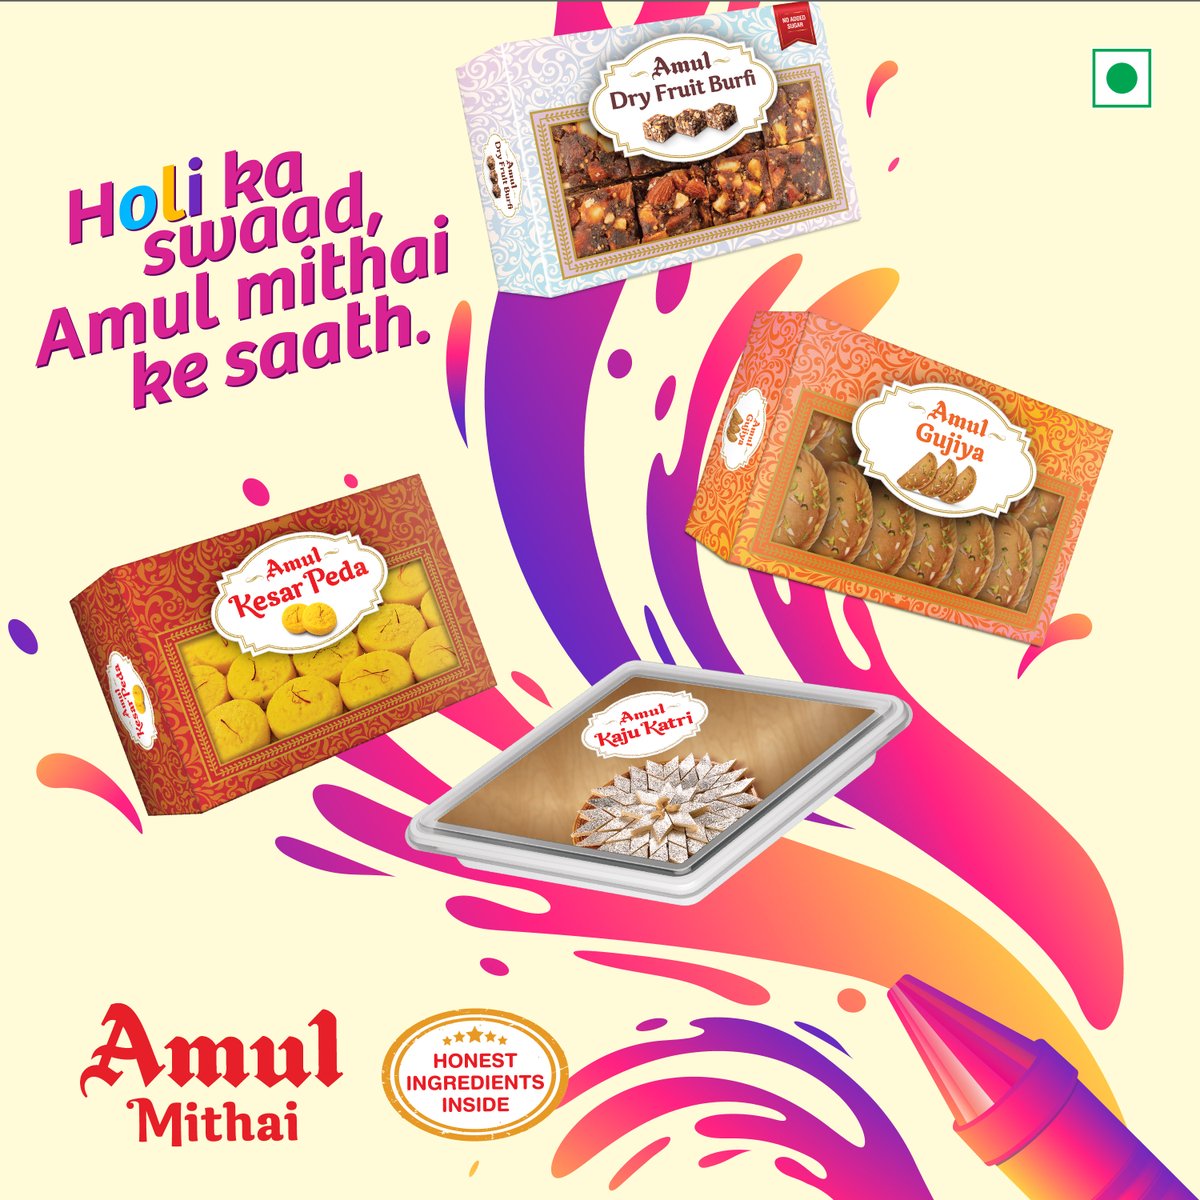 Colour your world sweet this Holi with Amul Mithai.
#HappyHoli #Amul #AmulMithai #Mithai #Indiansweets #festivities #amulsweets #kajukatri #Gujiya #dryfruitburfi